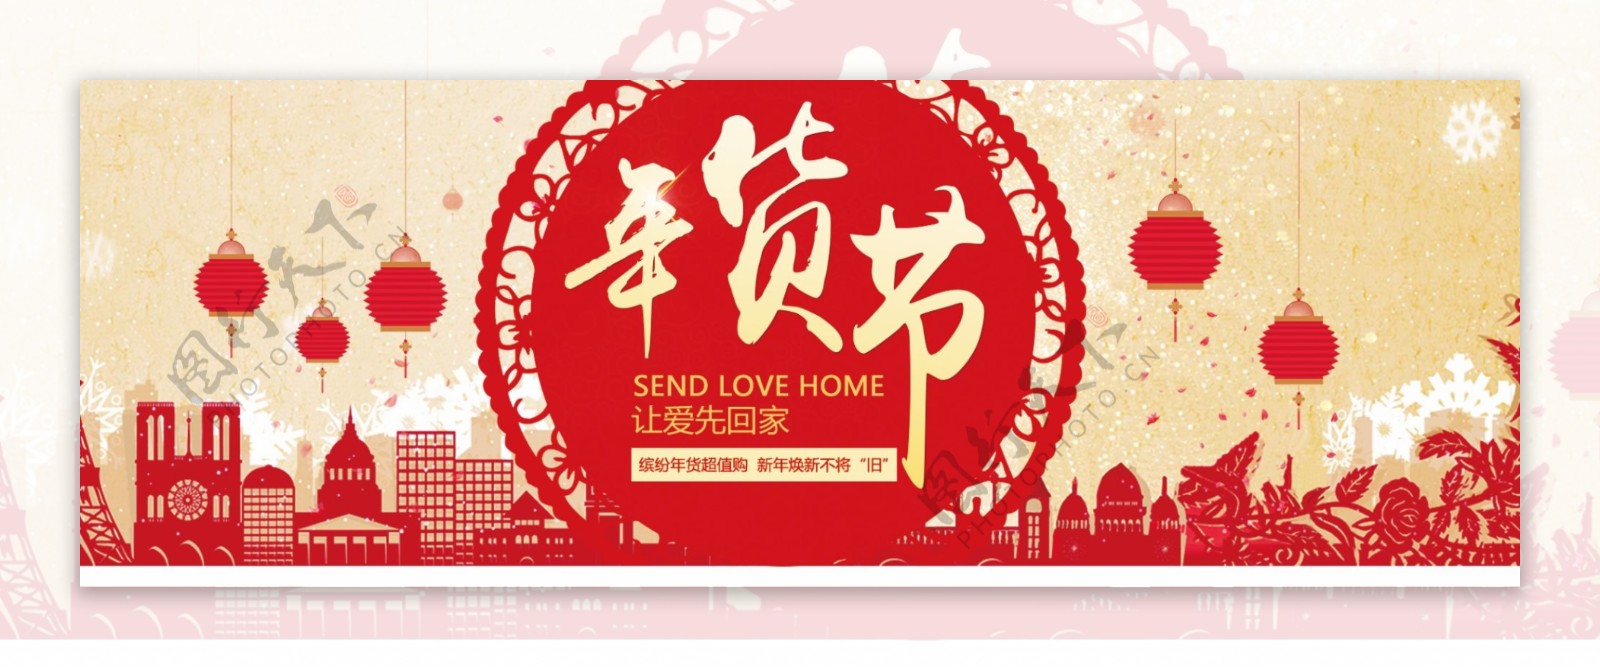 2018年红色喜庆剪纸年货节海报设计